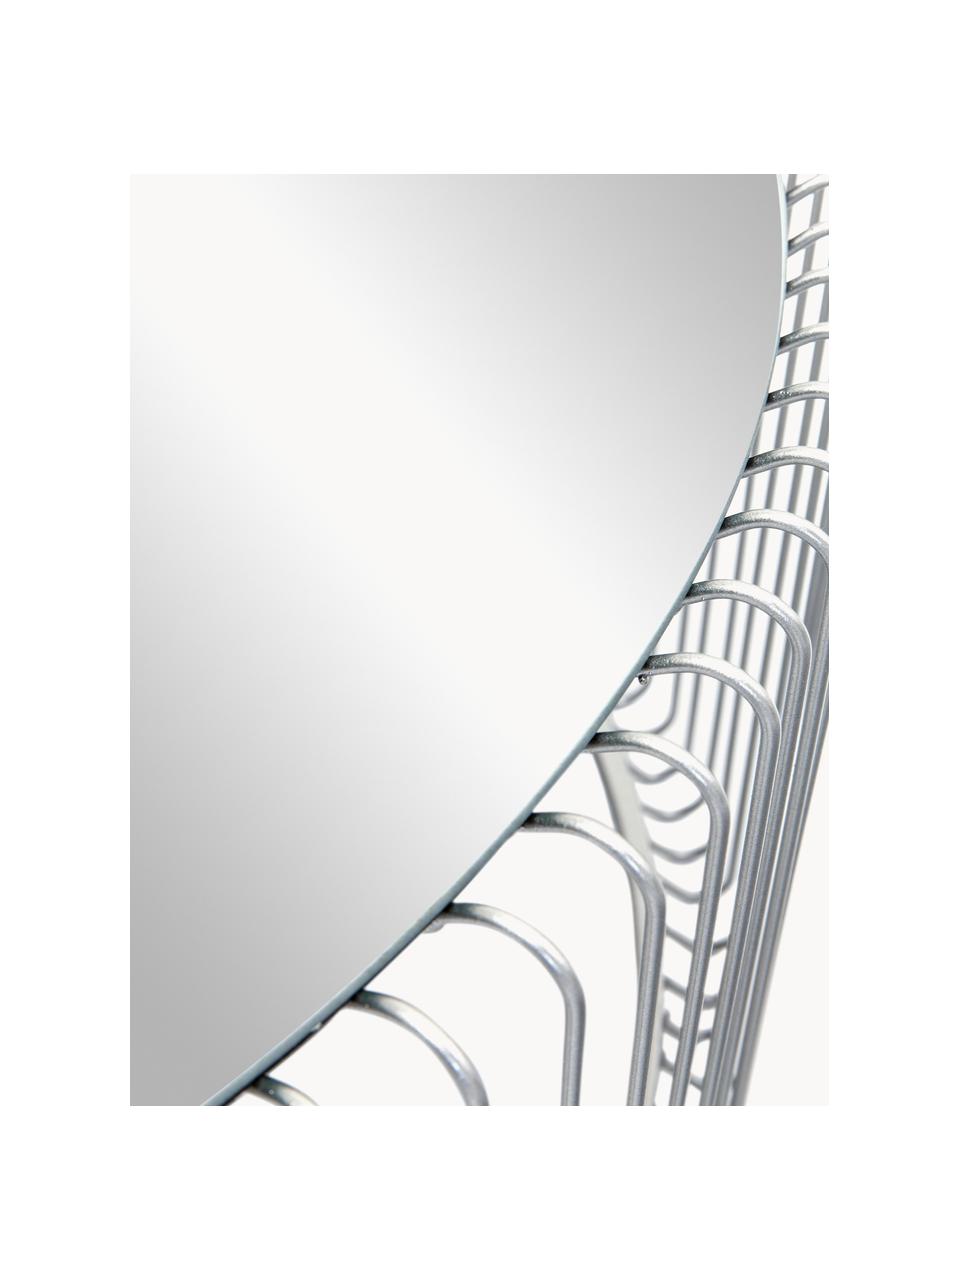 Couchtische Wire mit Glasplatte, 2er-Set, Gestell: Metall, pulverbeschichtet, Tischplatte: Sicherheitsglas, foliert, Silberfarben, Spiegelglas, Set mit verschiedenen Größen